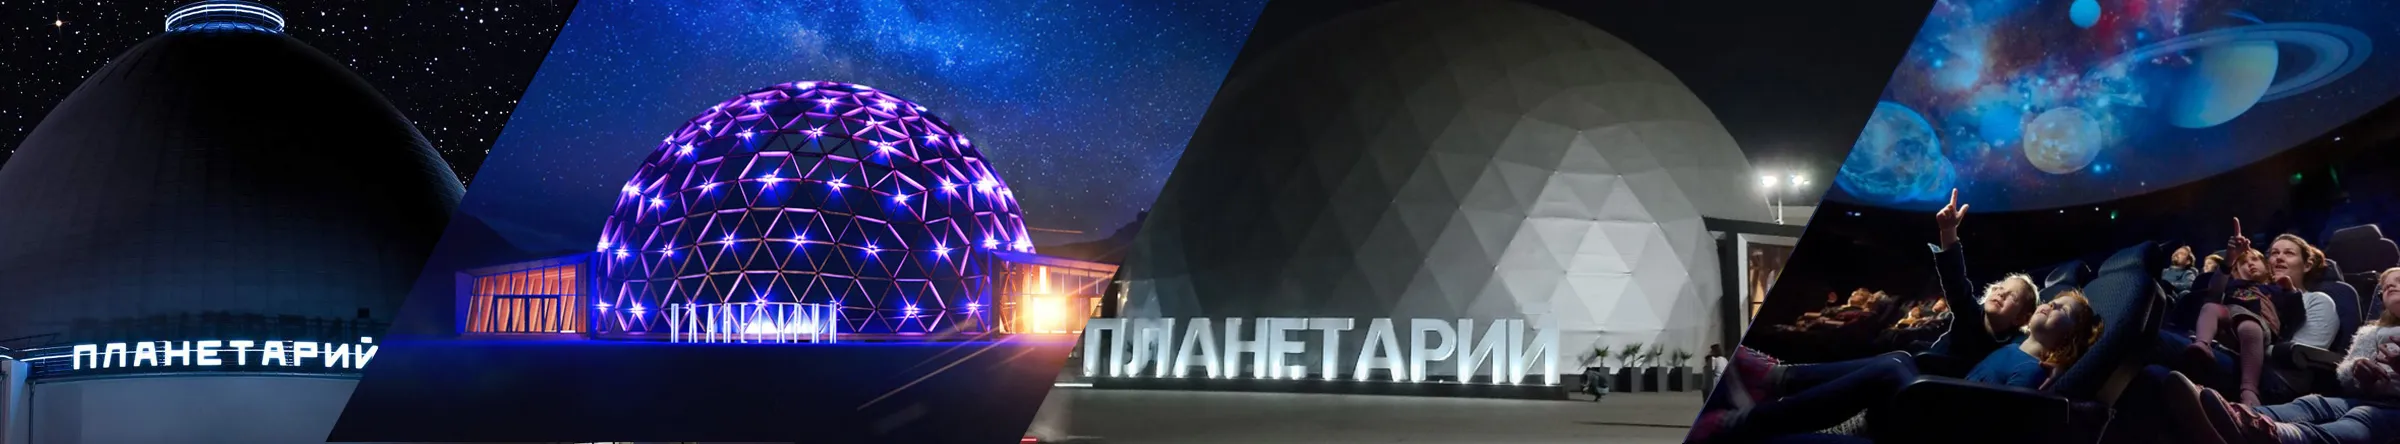 Российские технологии в производстве сферических экранов для современных стационарных планетариев 20 и более метров